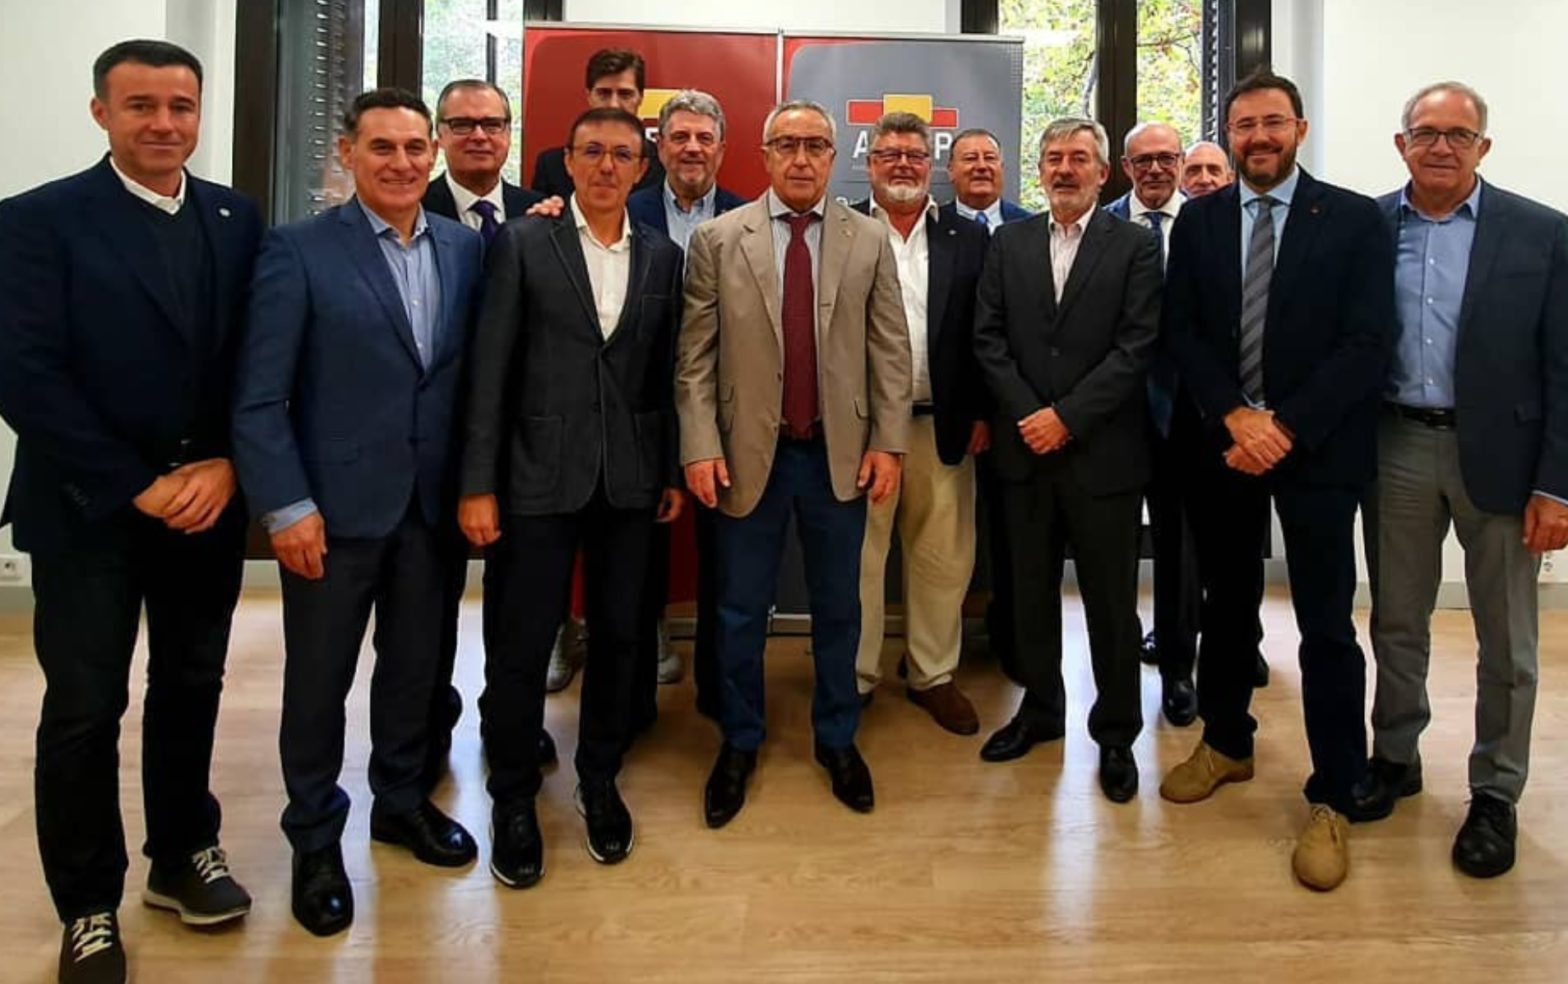 El presidente del COE Alejandro Blanco asiste a la Junta Directiva de la Asociación del Deporte Español